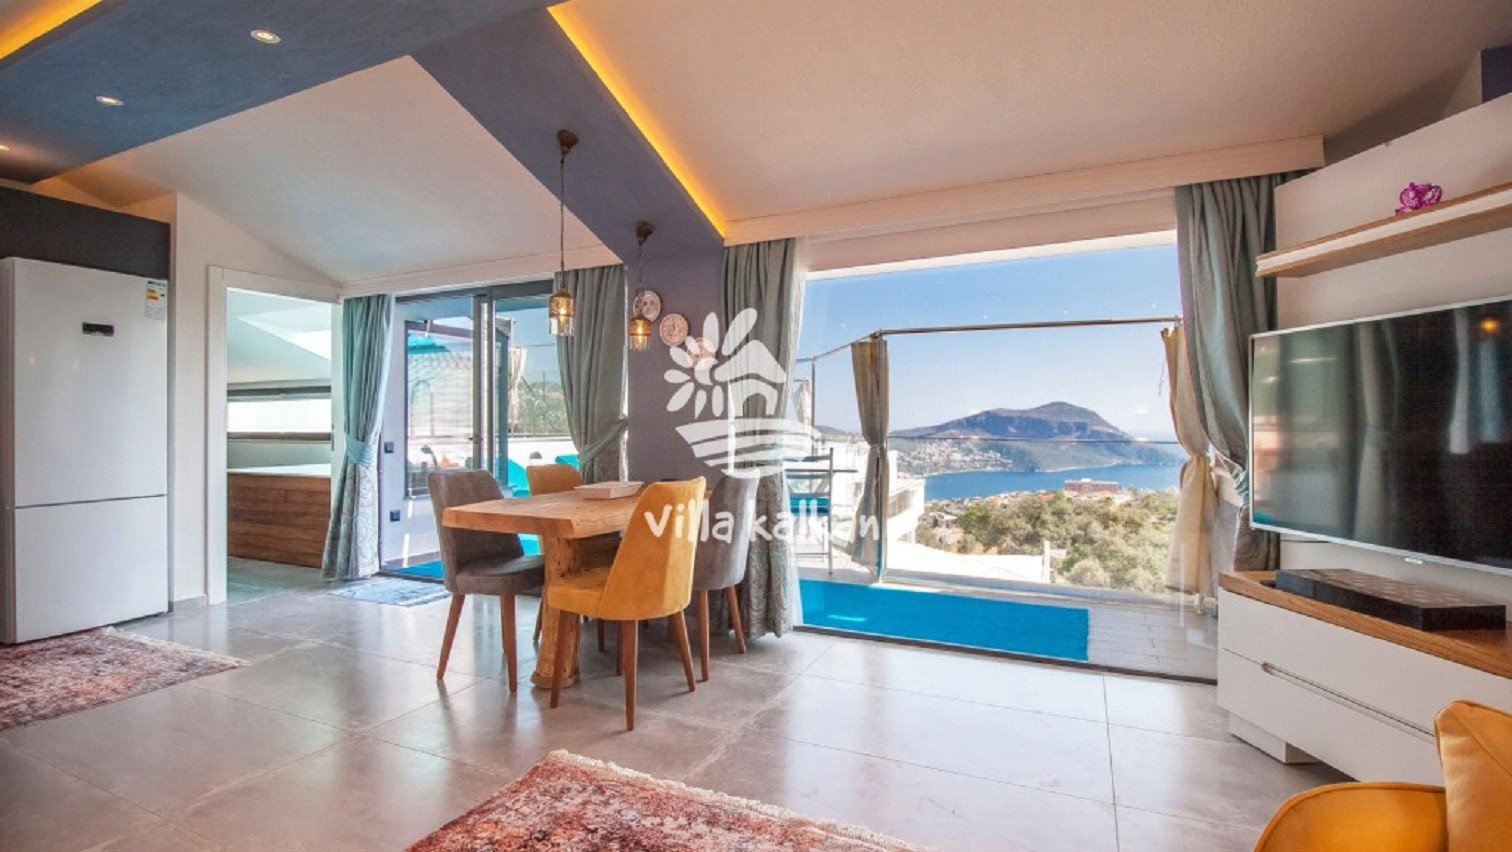 Antalyada Kiralık Villa Tercihiniz İçin Güvenilir Adres